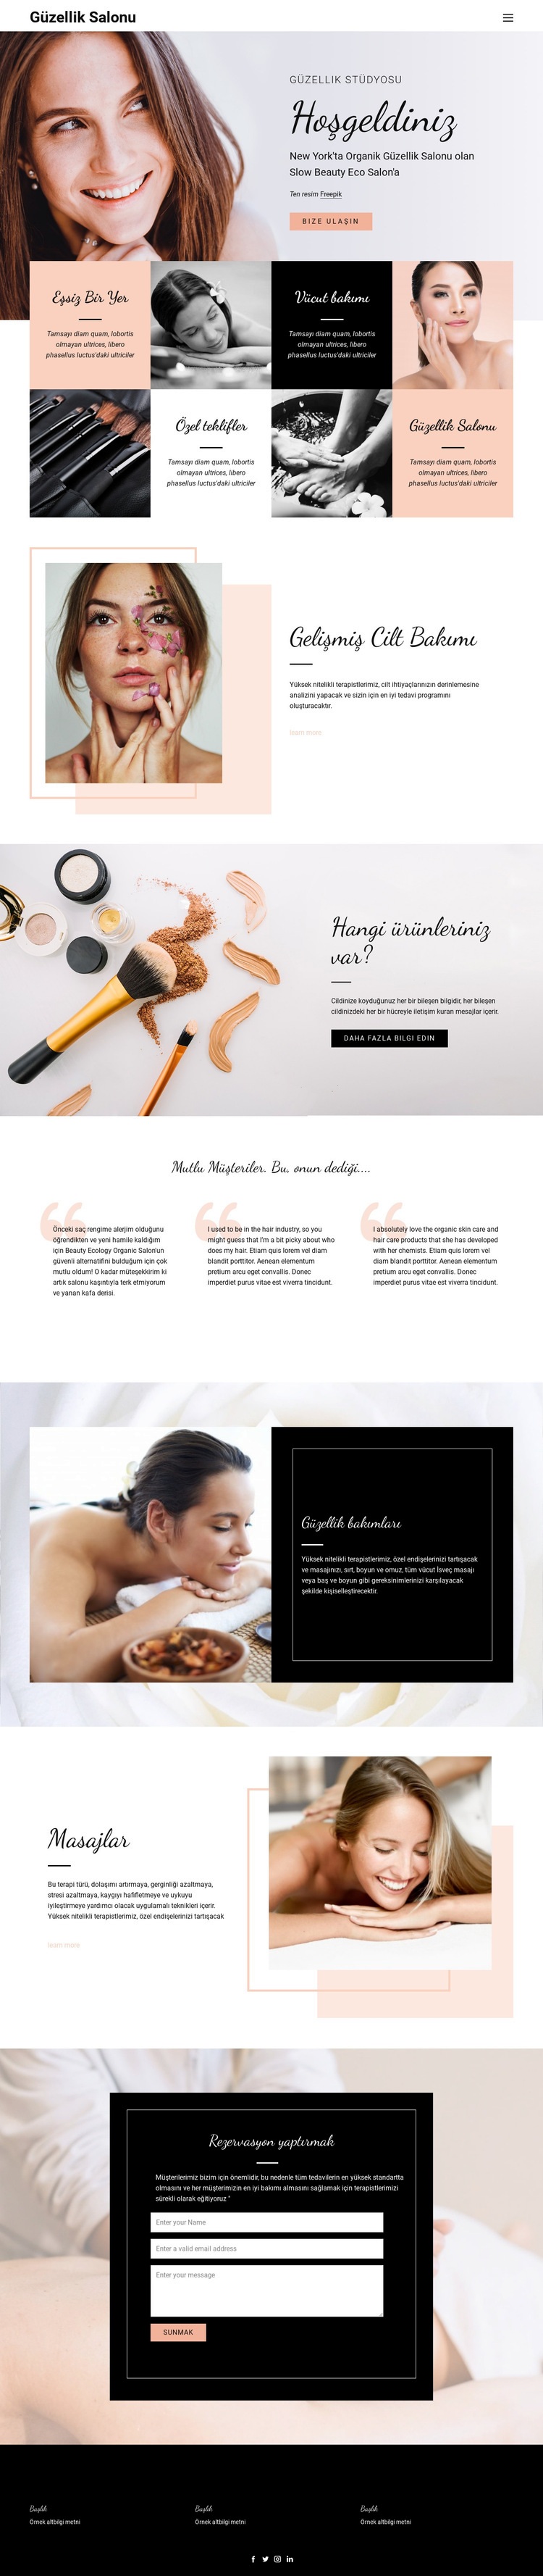 Saç, tırnak ve güzellik salonu Web sitesi tasarımı